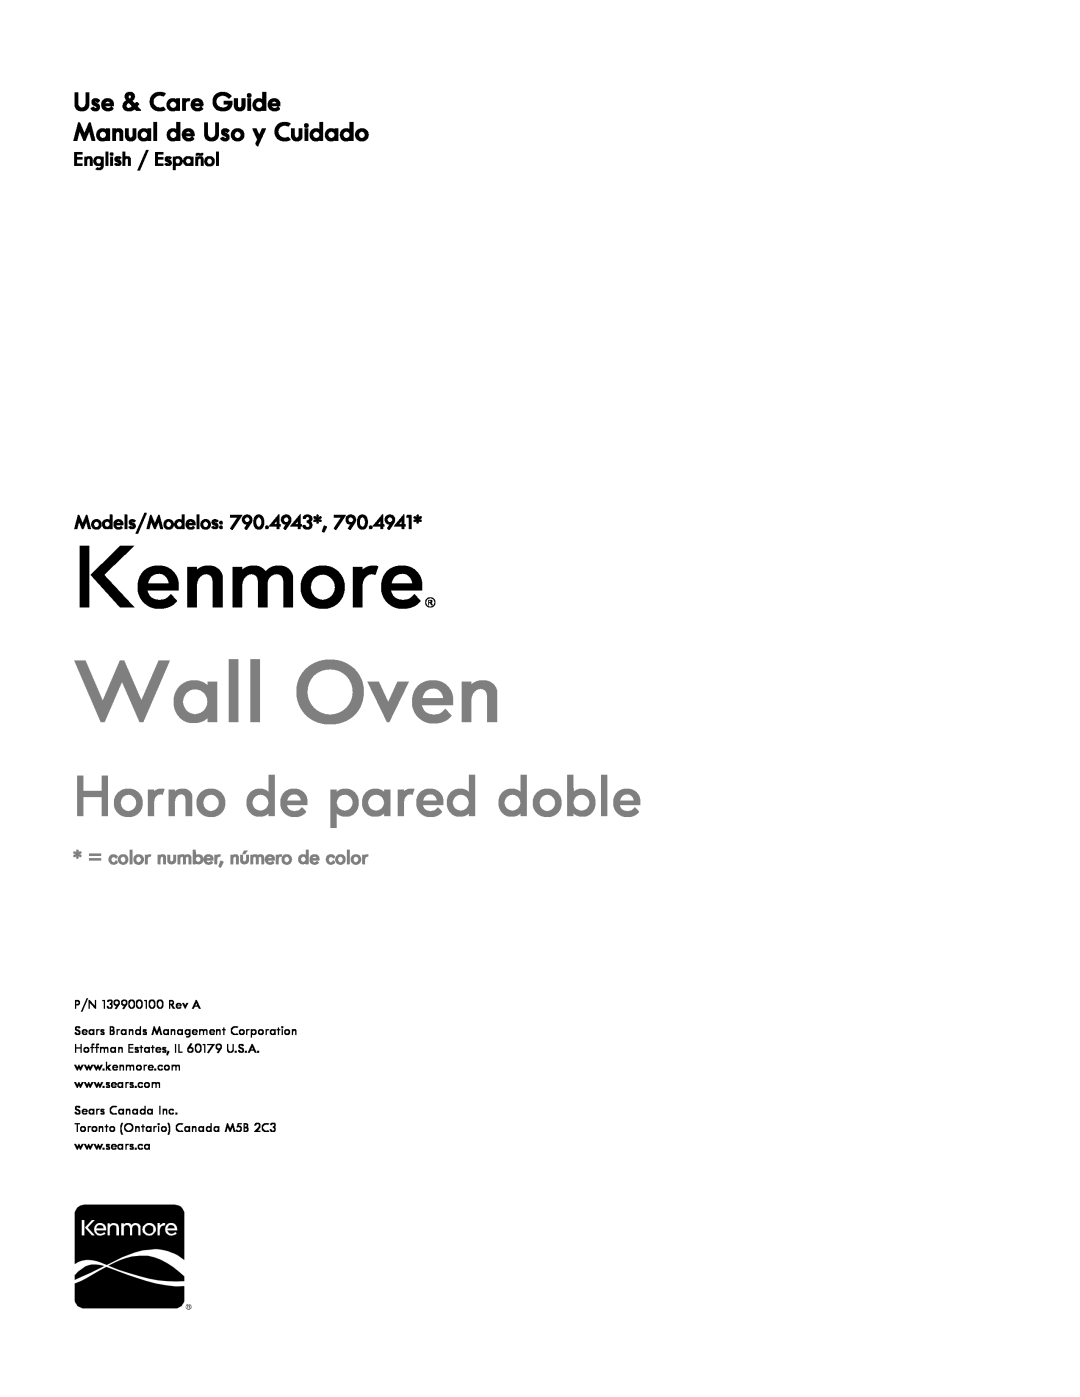 Kenmore 790.4941, 790.4943 manual Kenmore, Wall Oven, Horno de pared doble, Use & Care Guide Manual de Uso y Cuidado 